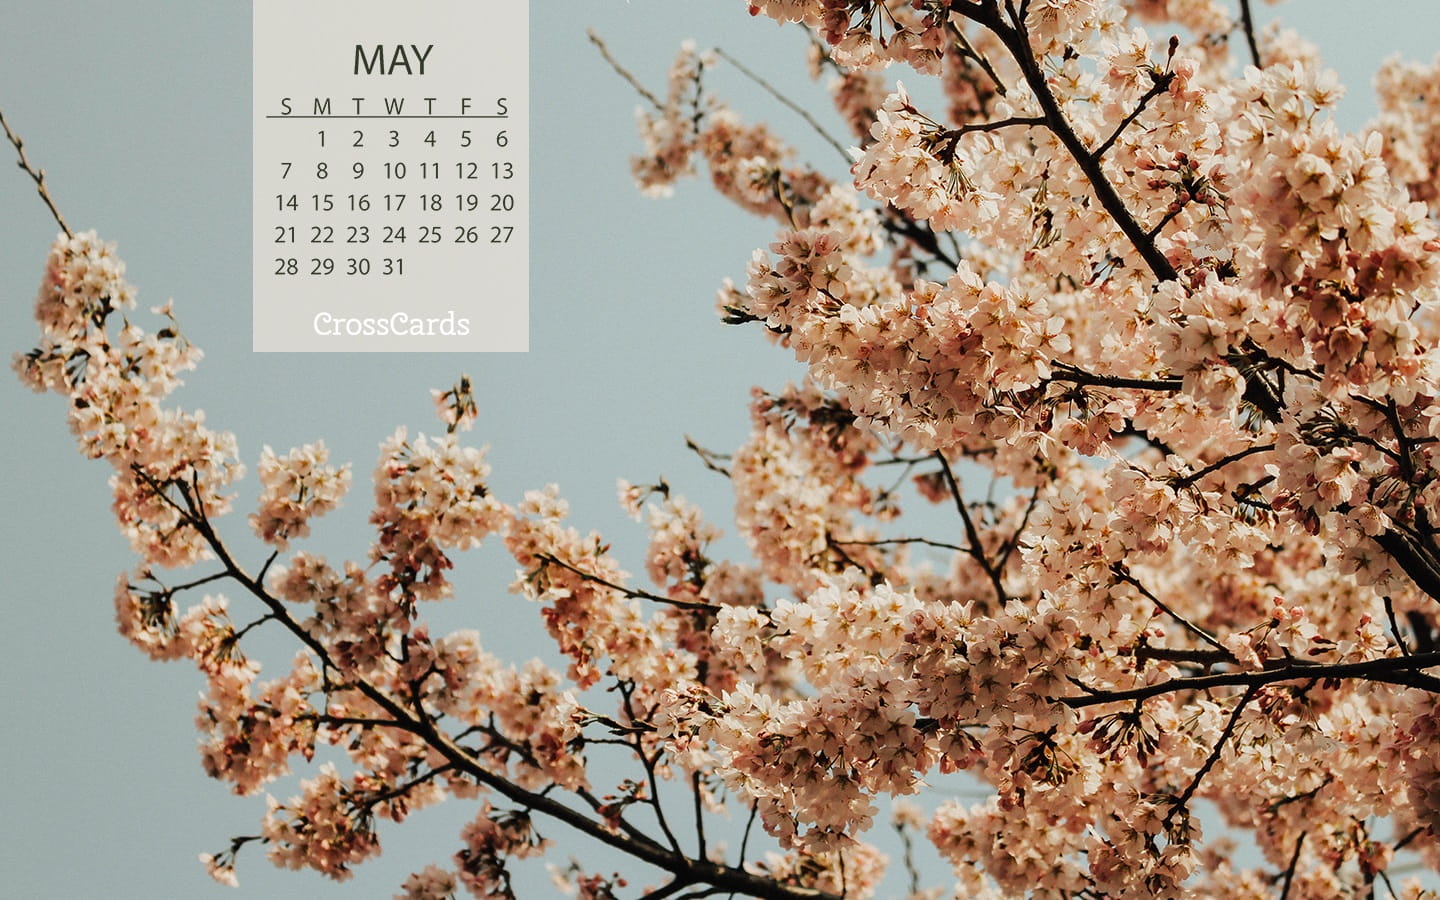 2017 desktop wallpaper calendars